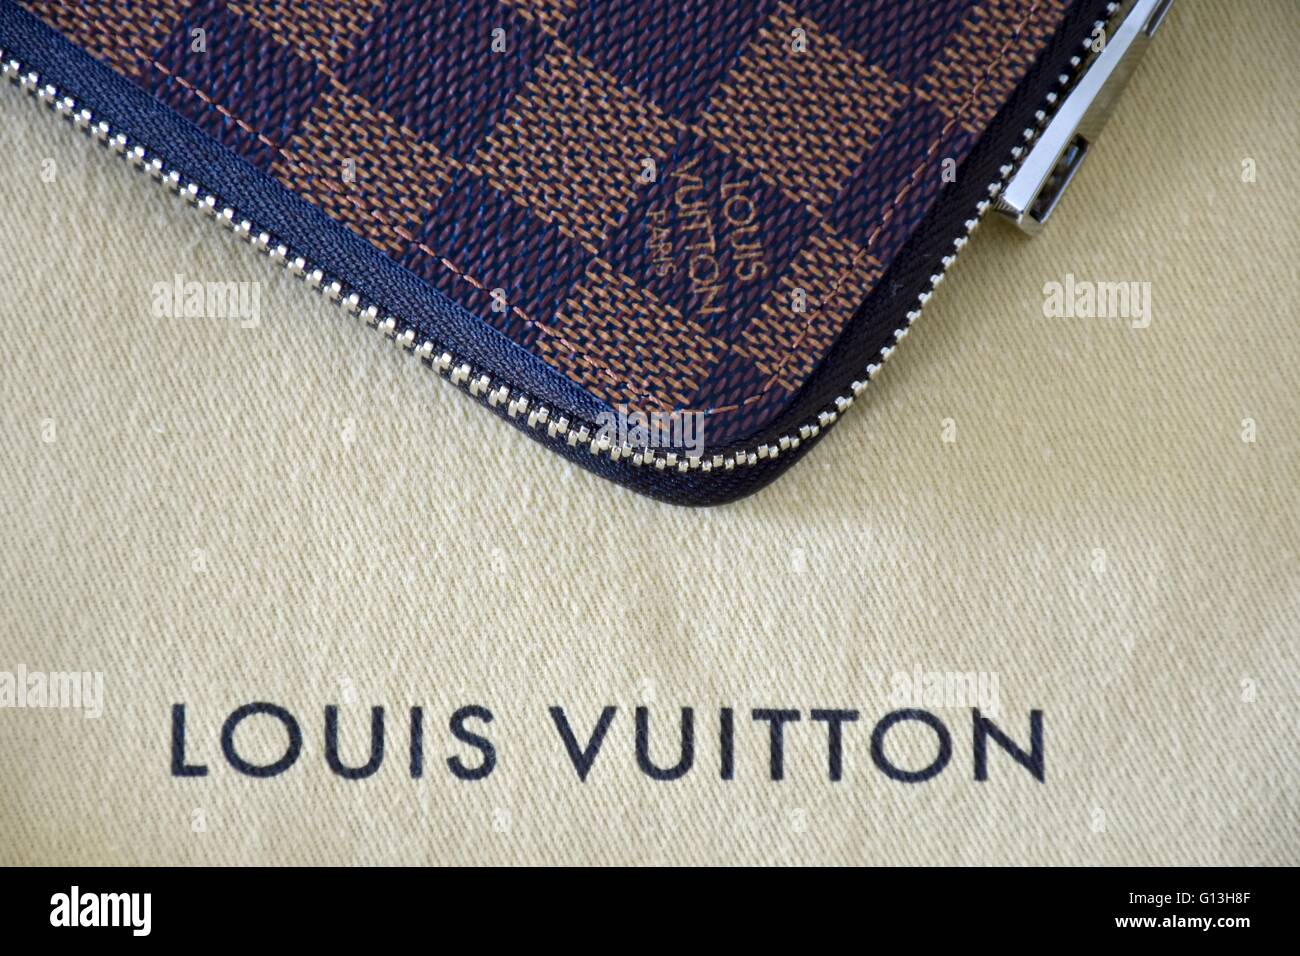 7 Louis Vuitton Wallet Cash Images, Stock Photos, 3D objects, & Vectors